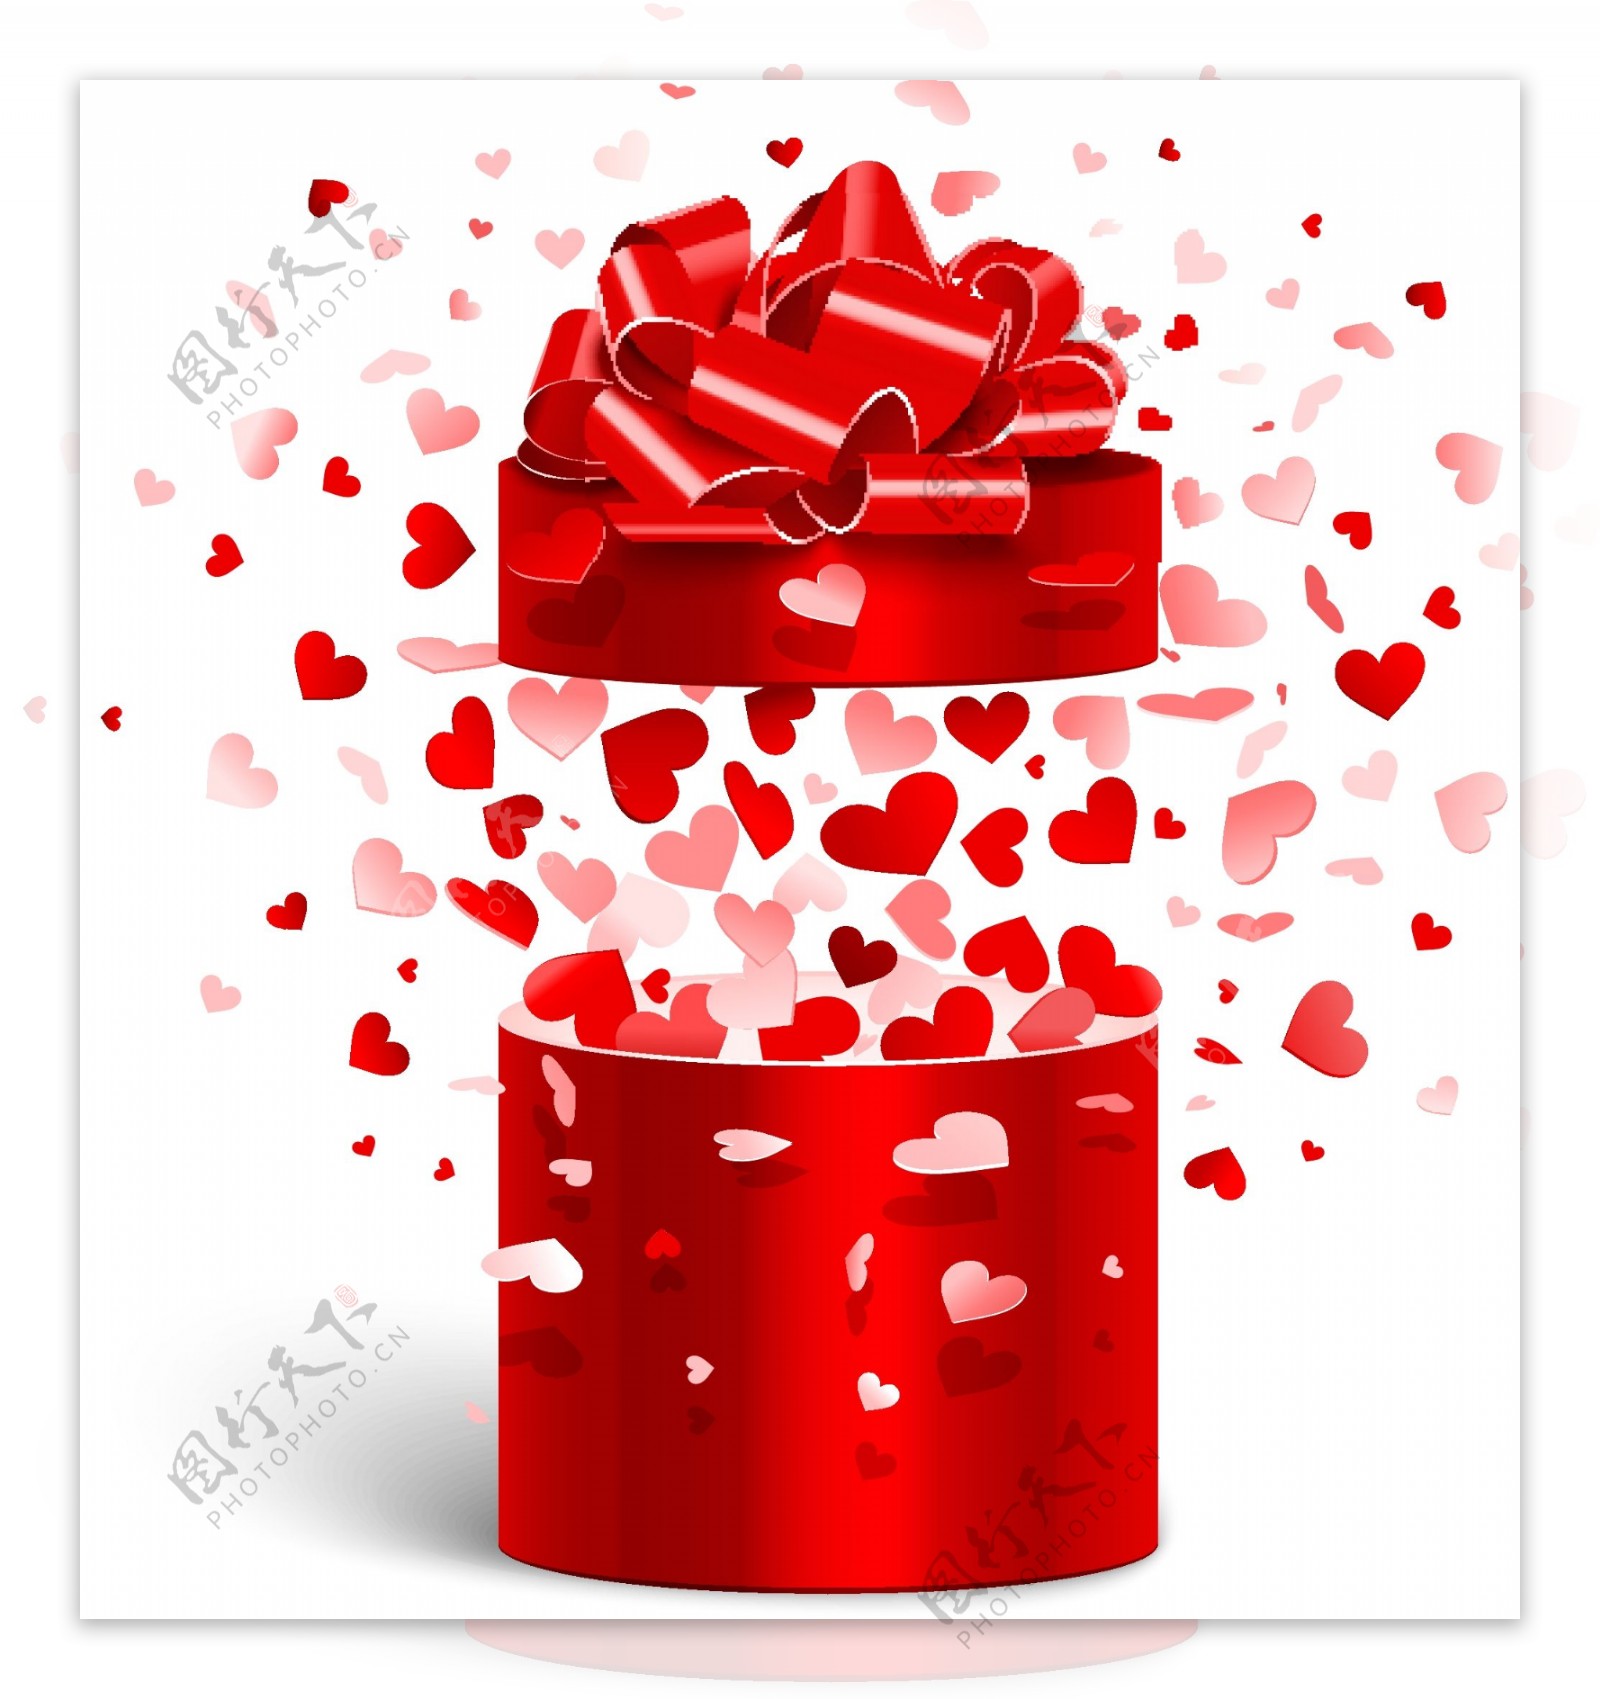 情人节红色礼盒与缤纷爱心